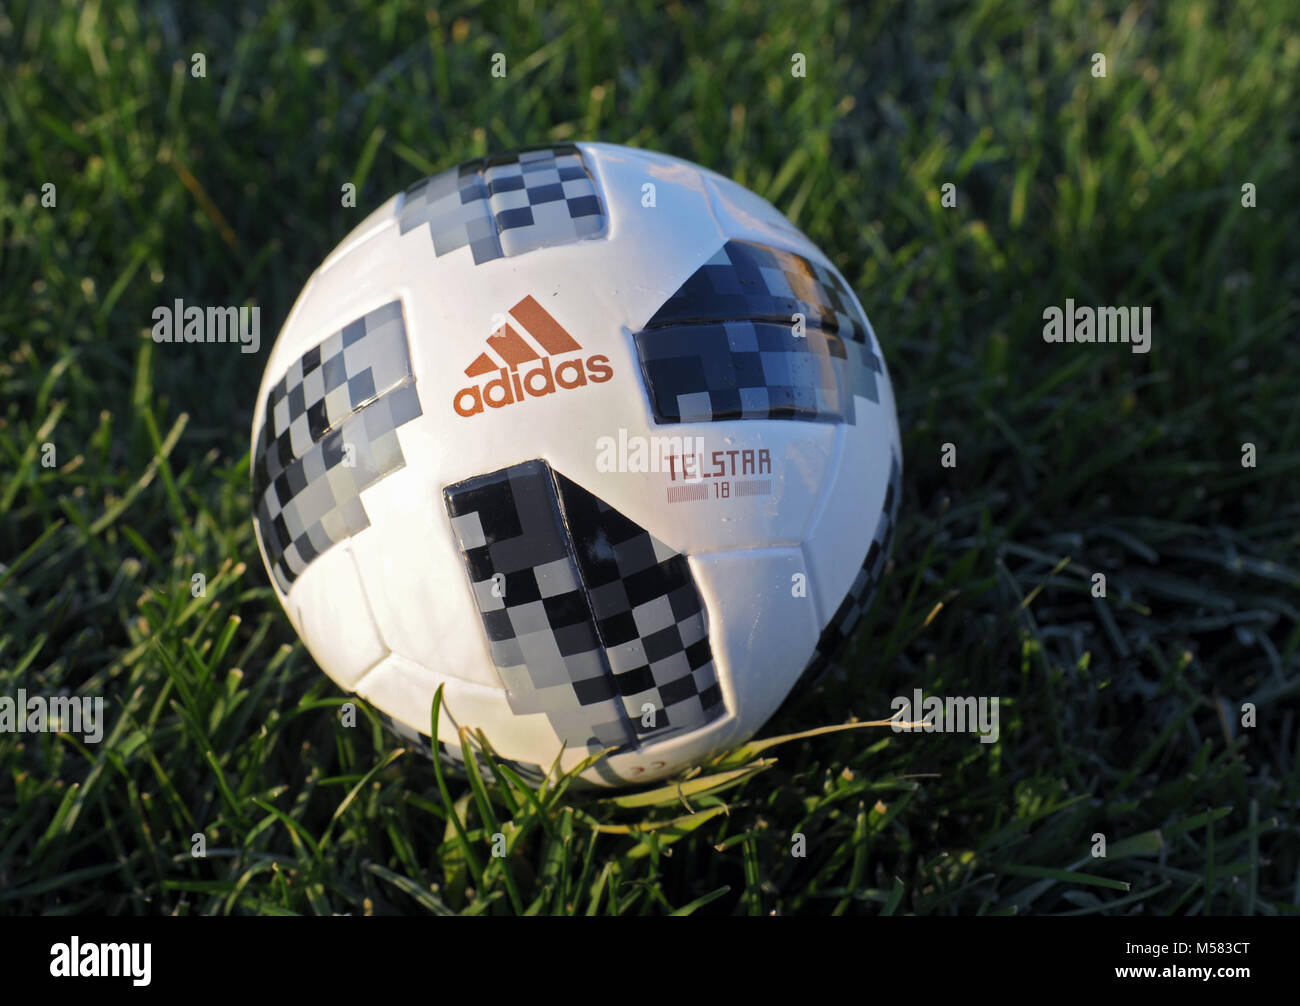 Adidas official match ball fotografías e imágenes de alta resolución -  Página 7 - Alamy